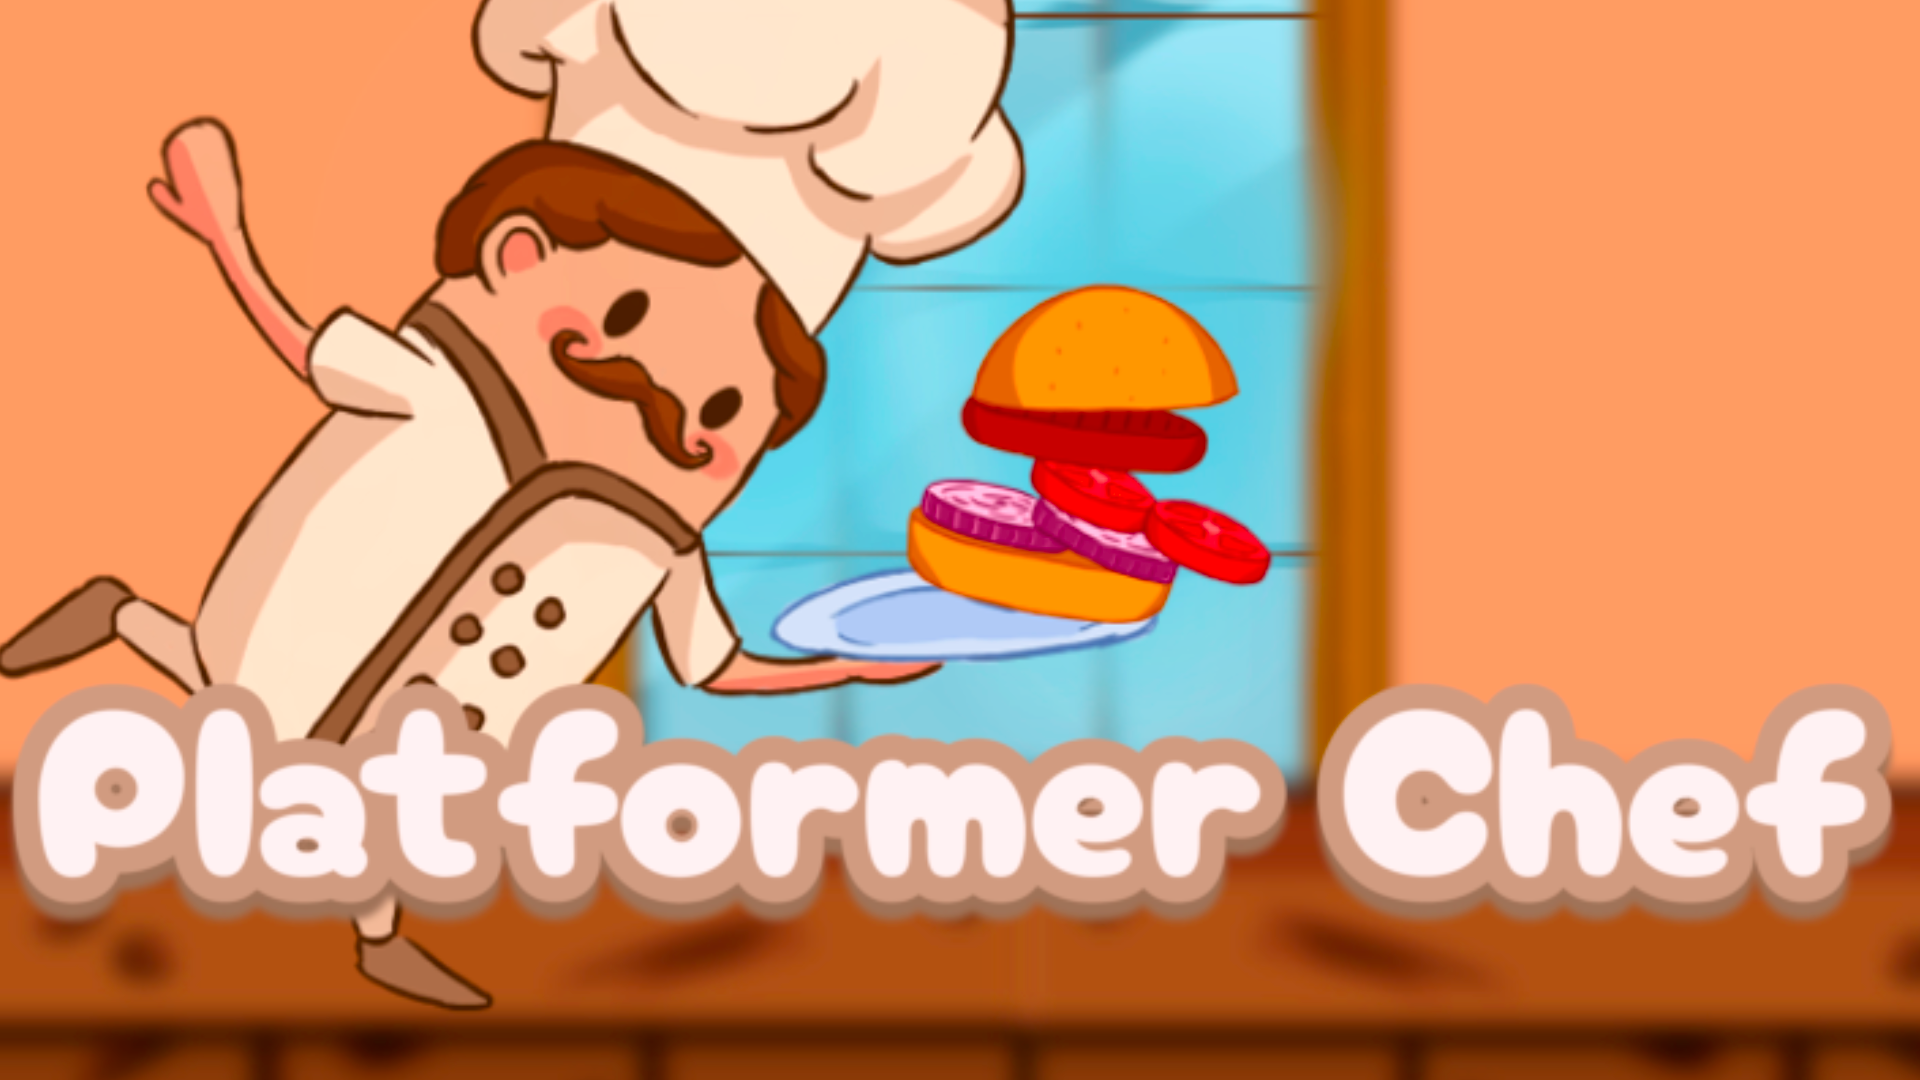 Platformer Chef Game Image